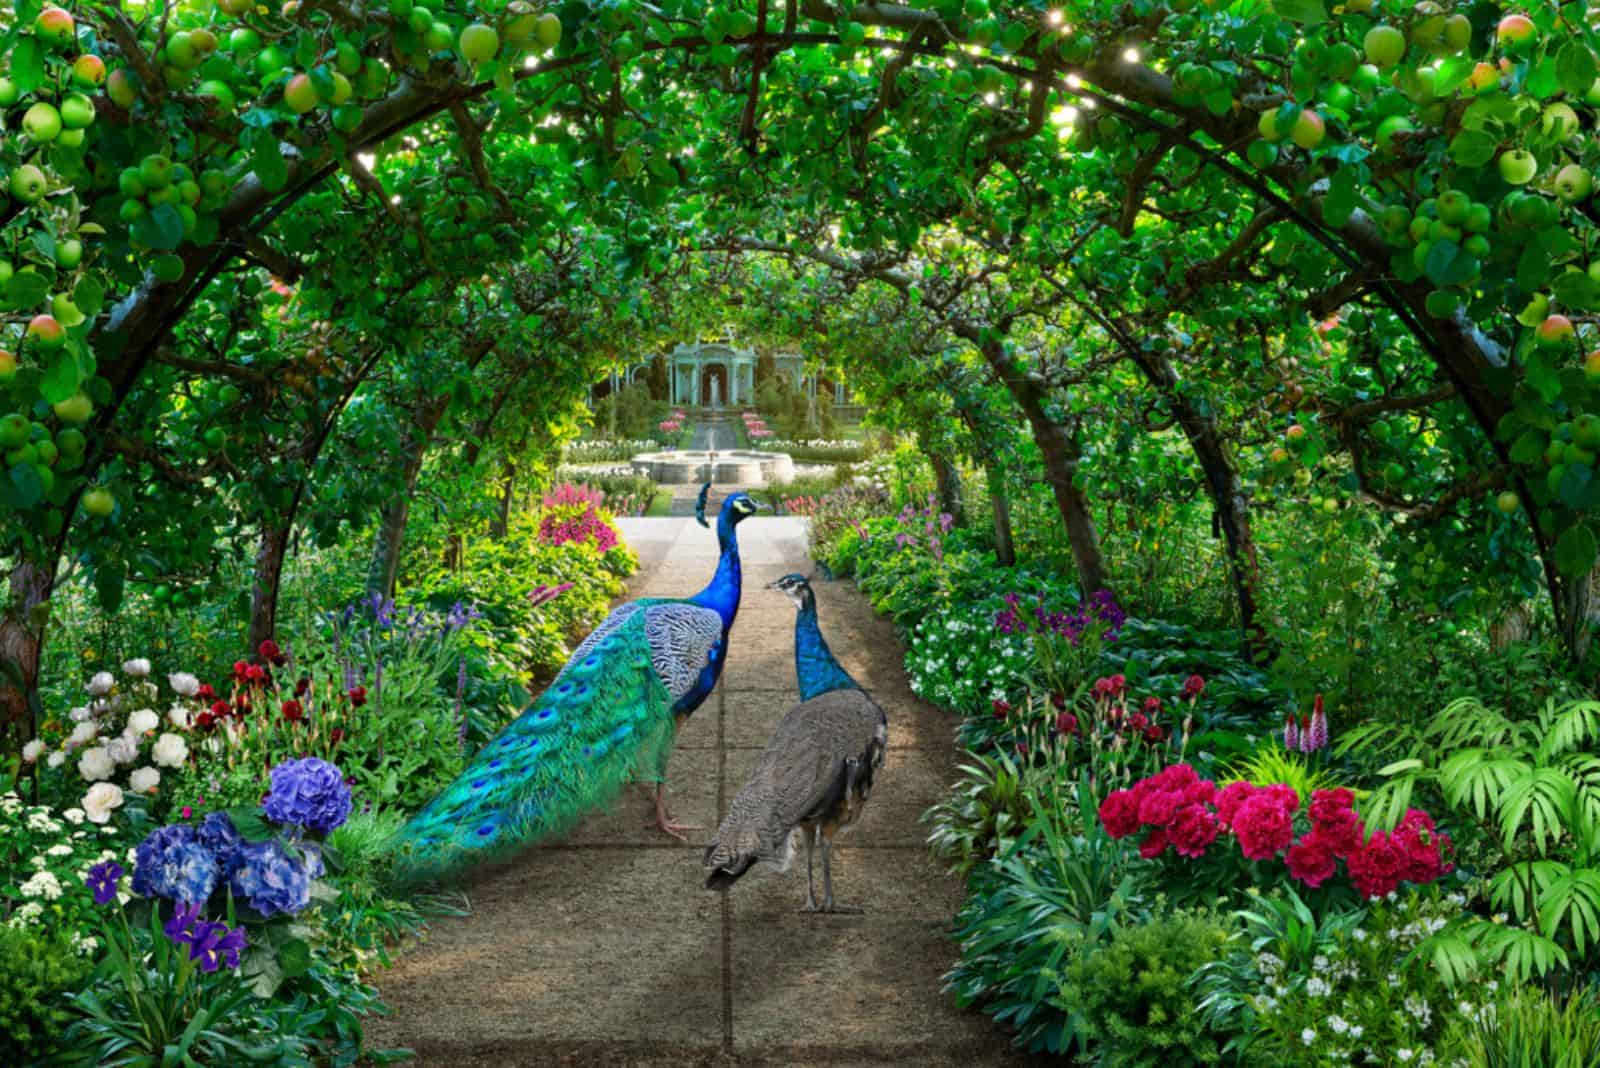 Un couple de paons se promène dans un jardin verdoyant